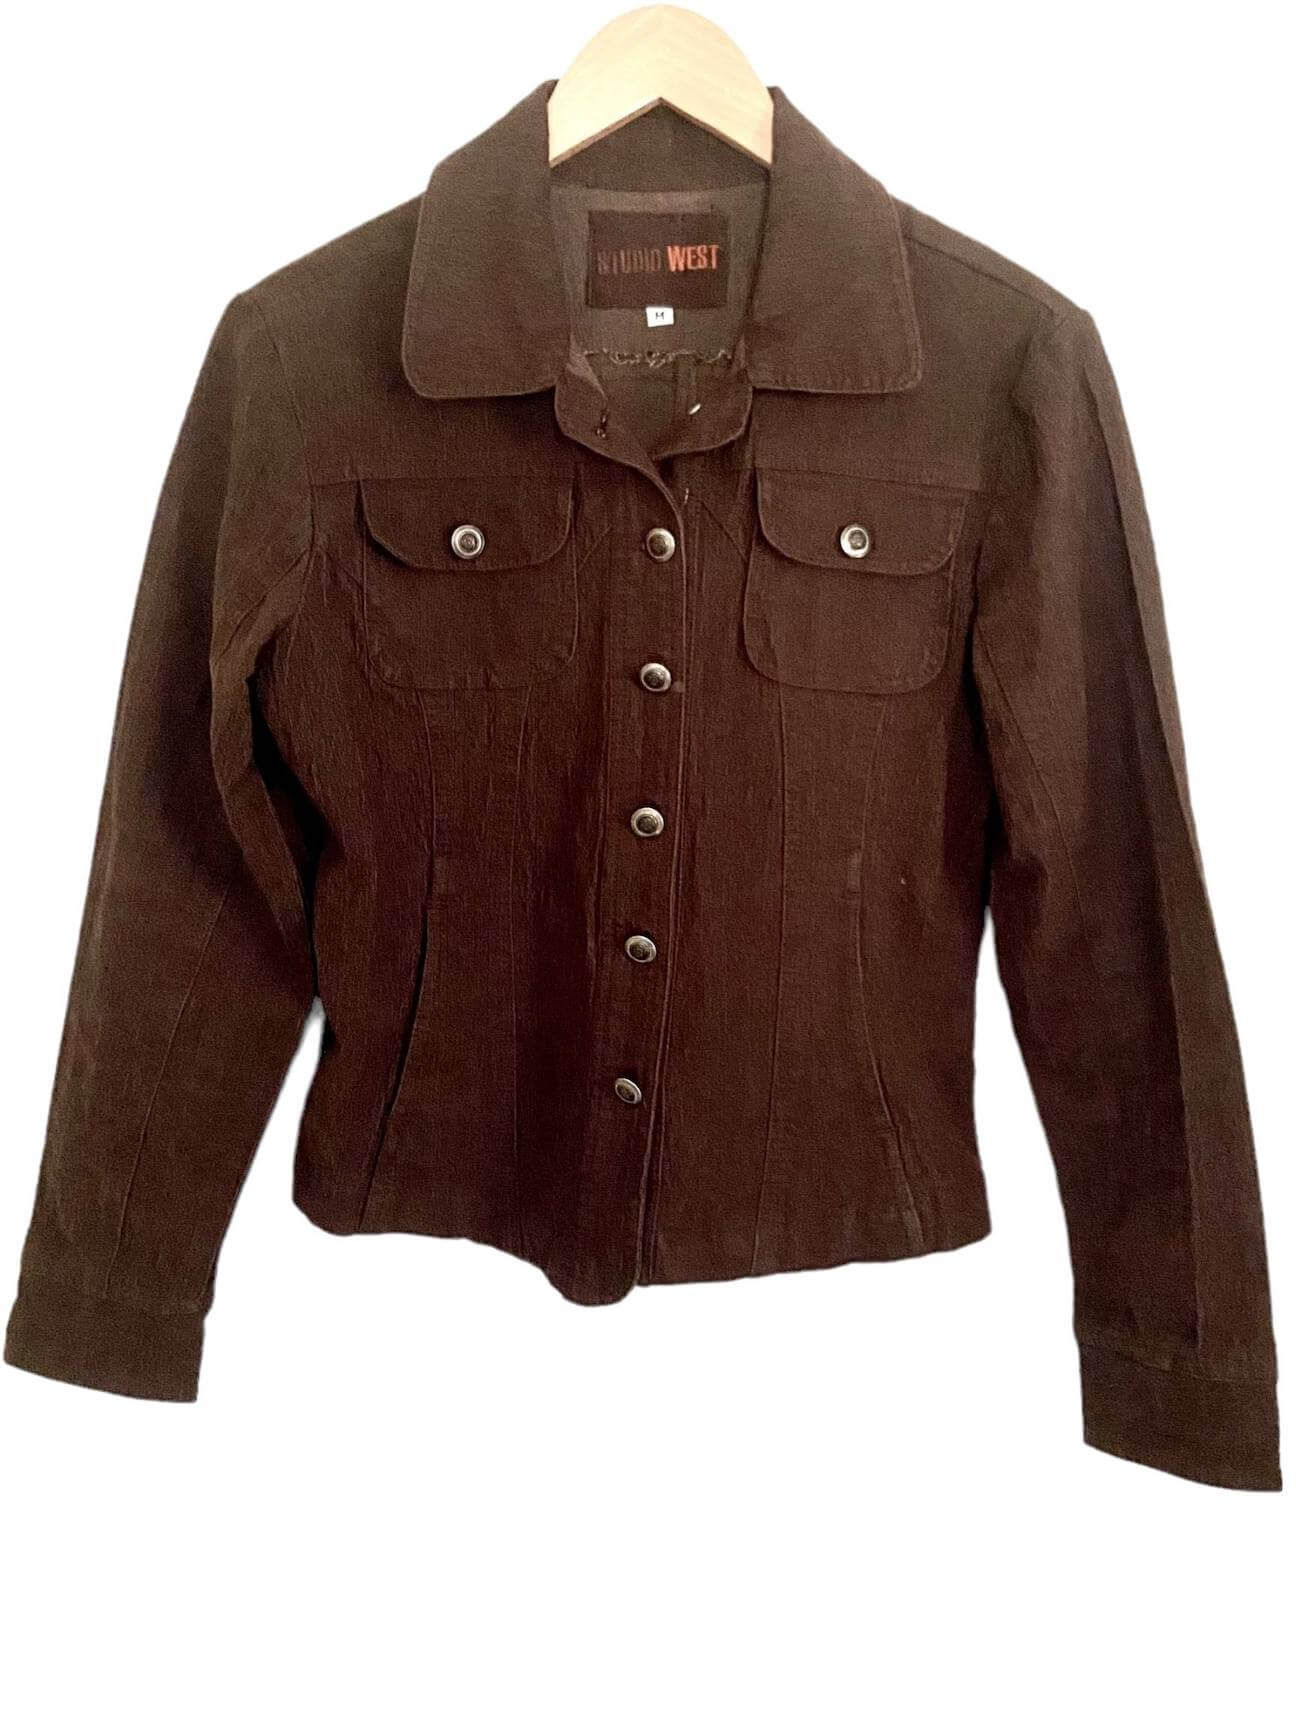 Soft Autumn STUDIO WEST brown denim jacket